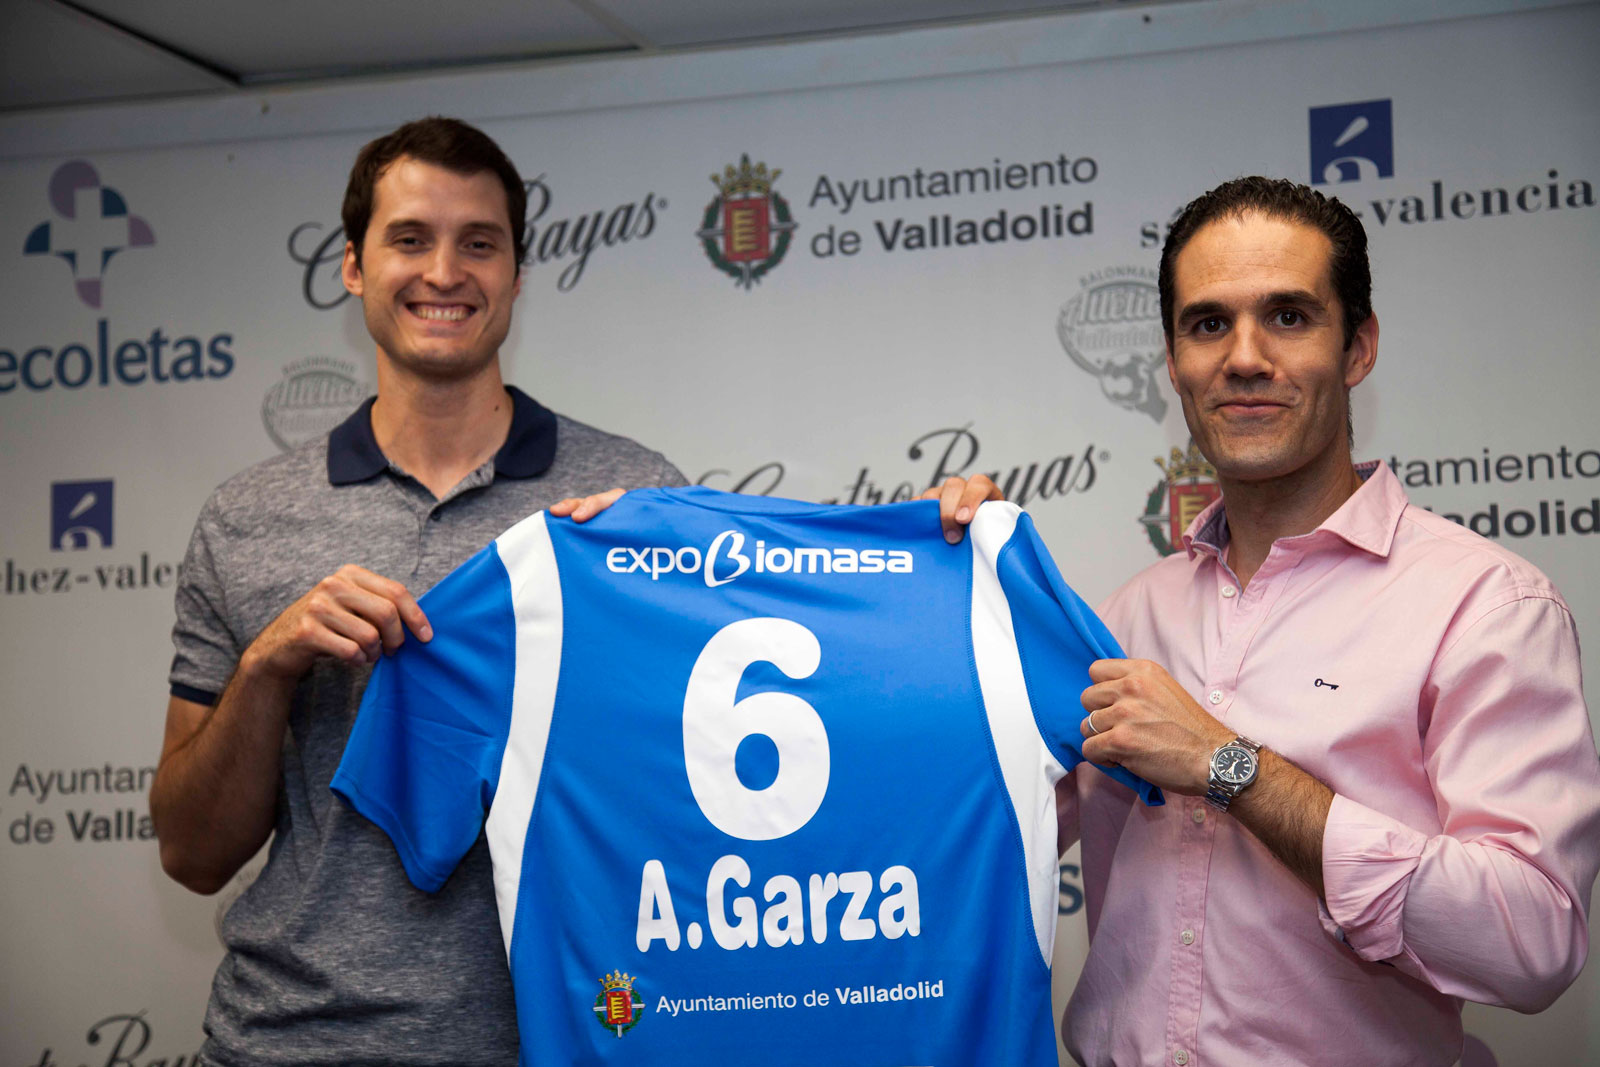 Alex Garza: “Espero poder ayudar al crecimiento del Recoletas Atlético Valladolid” | Galería 1 / 5